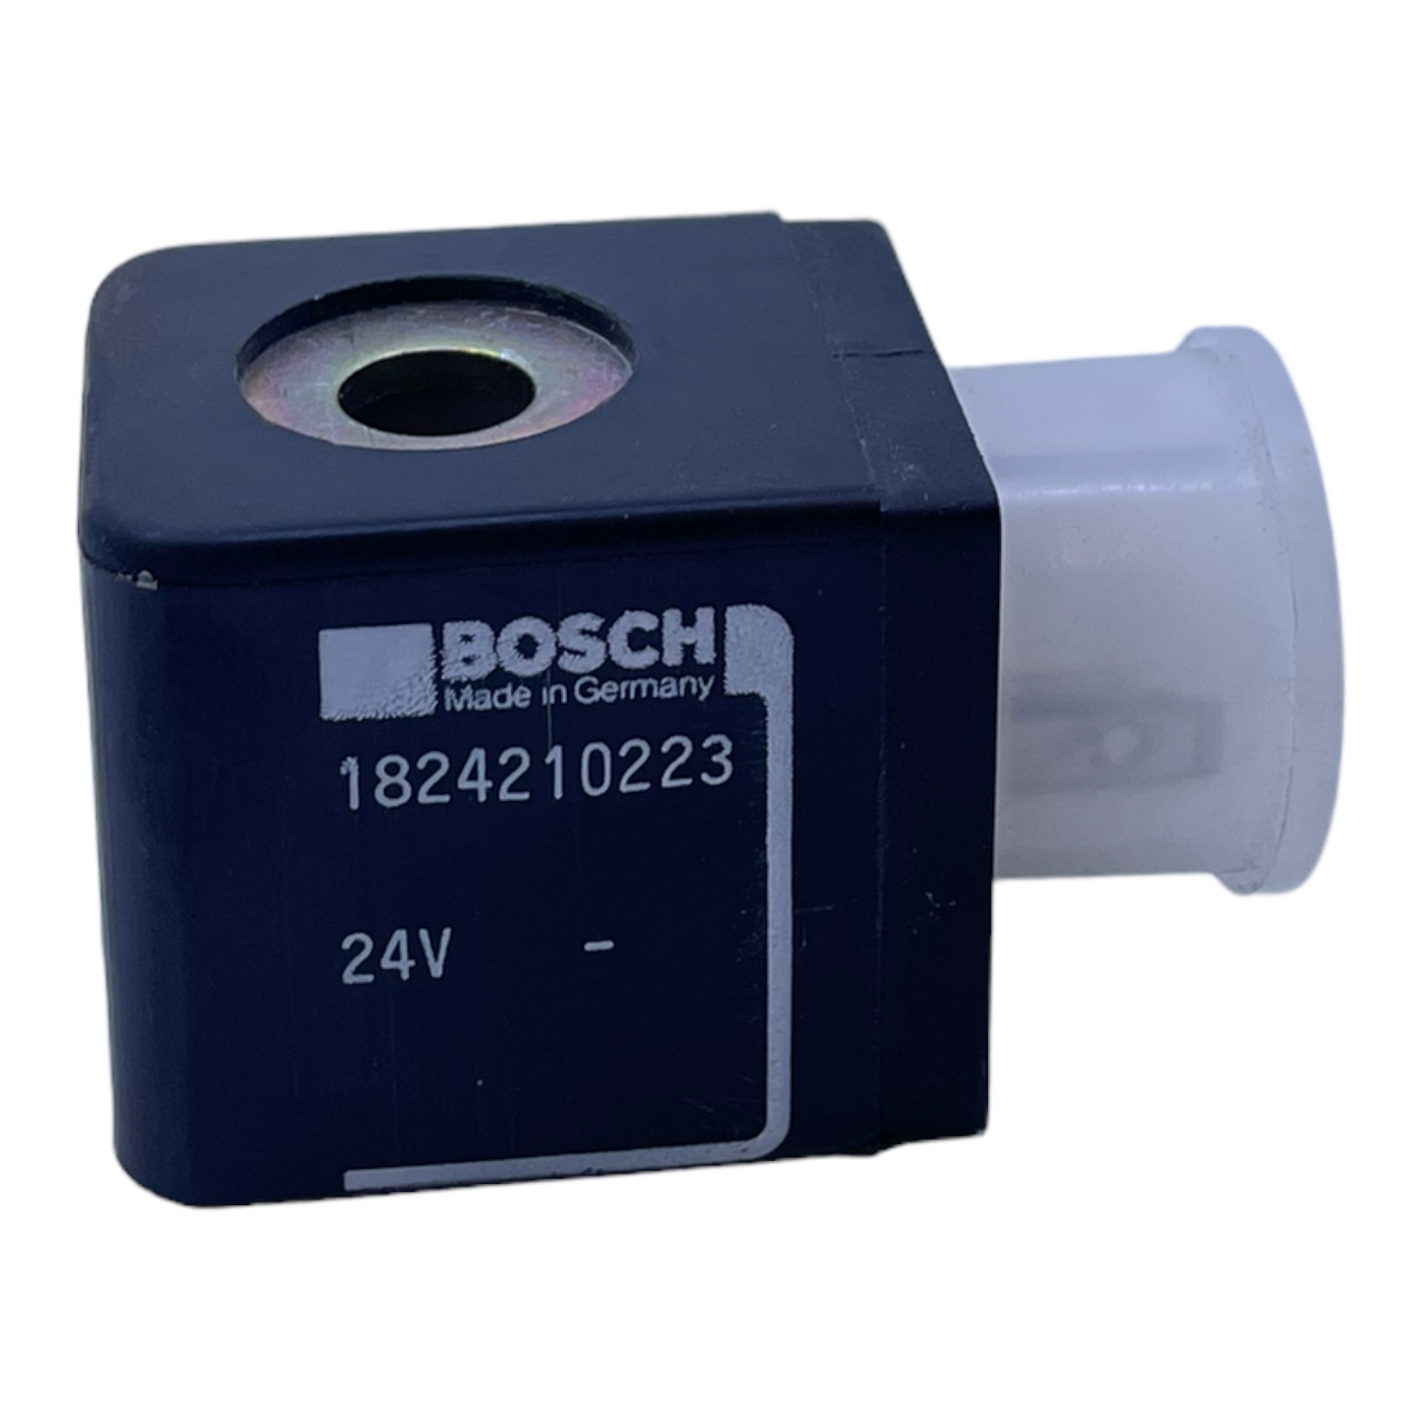 Bosch 1824210223 Magnetspule 24V Bosch 1824210223 Magnet Spule